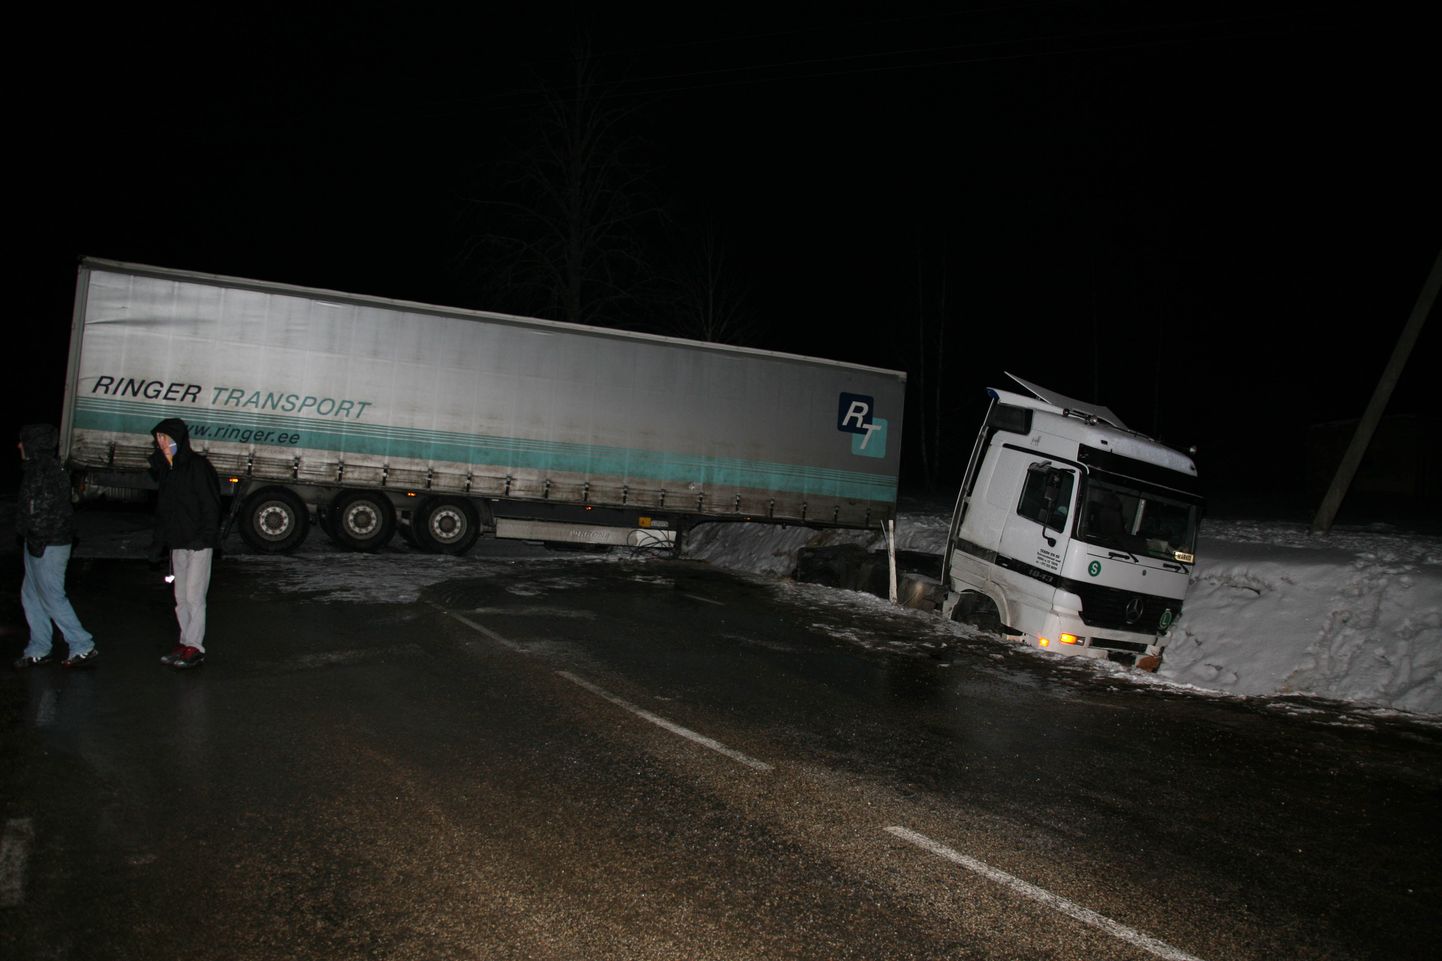 Neljapäeval kell 16.30 teelt välja sõitnud veoauto takistas liiklust ka veel pimeduse saabudes.